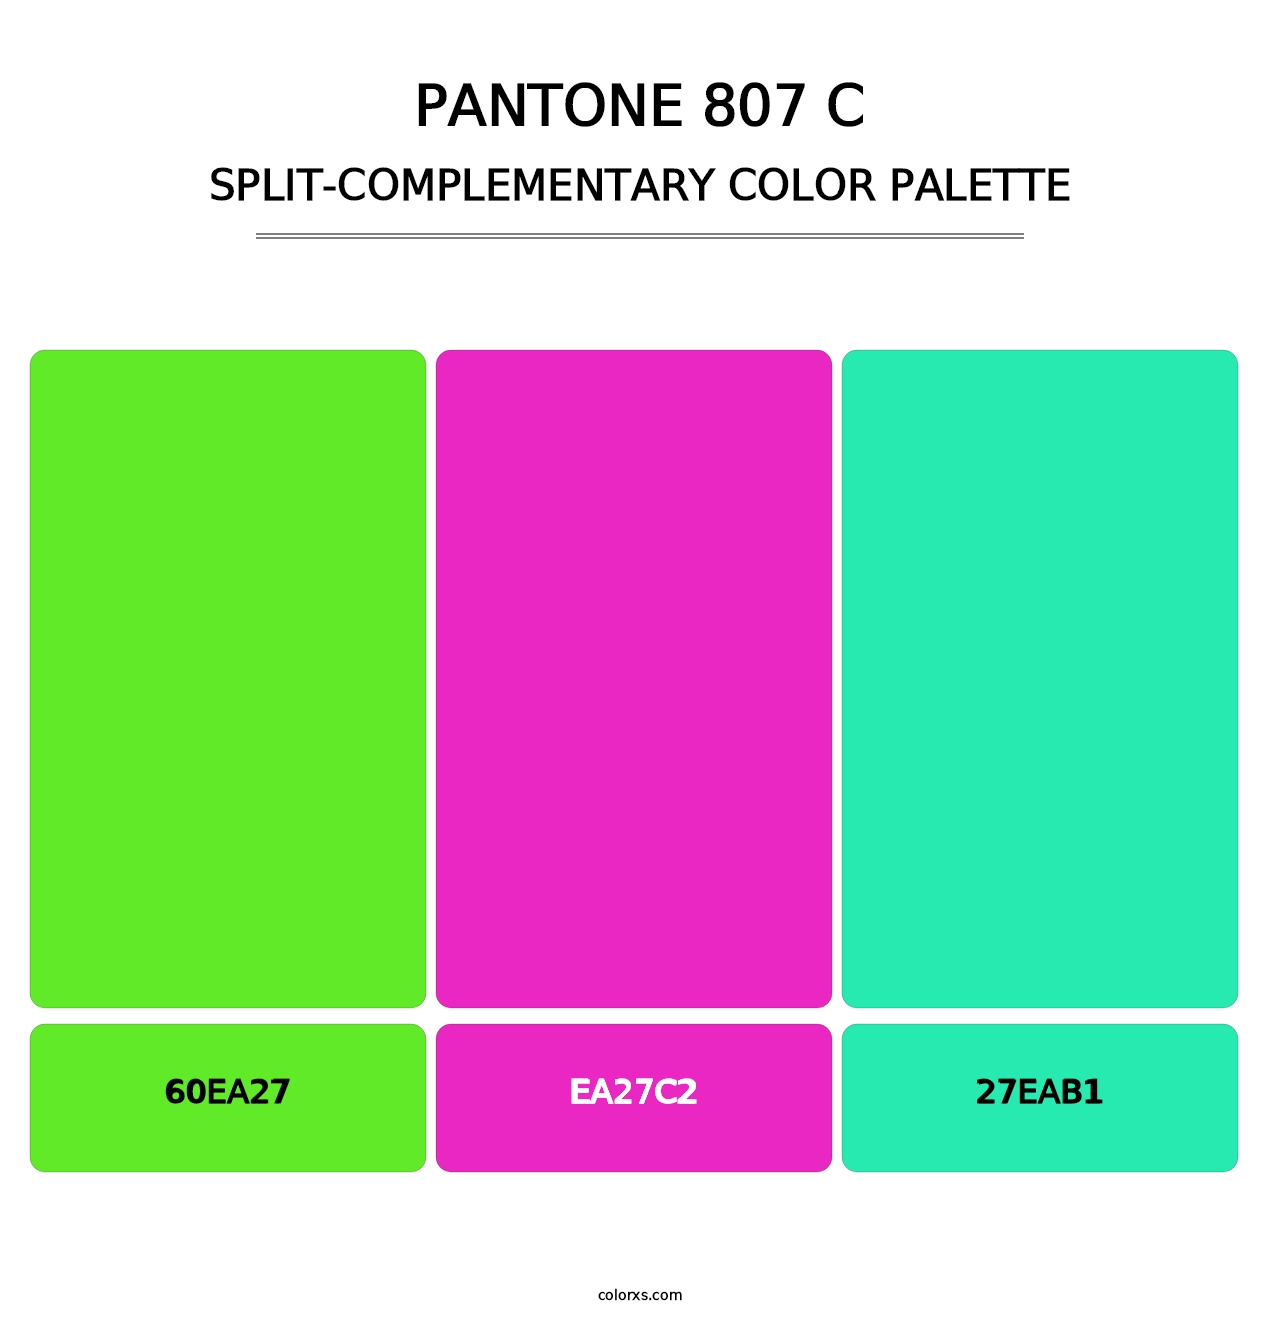 PANTONE 807 C - Split-Complementary Color Palette